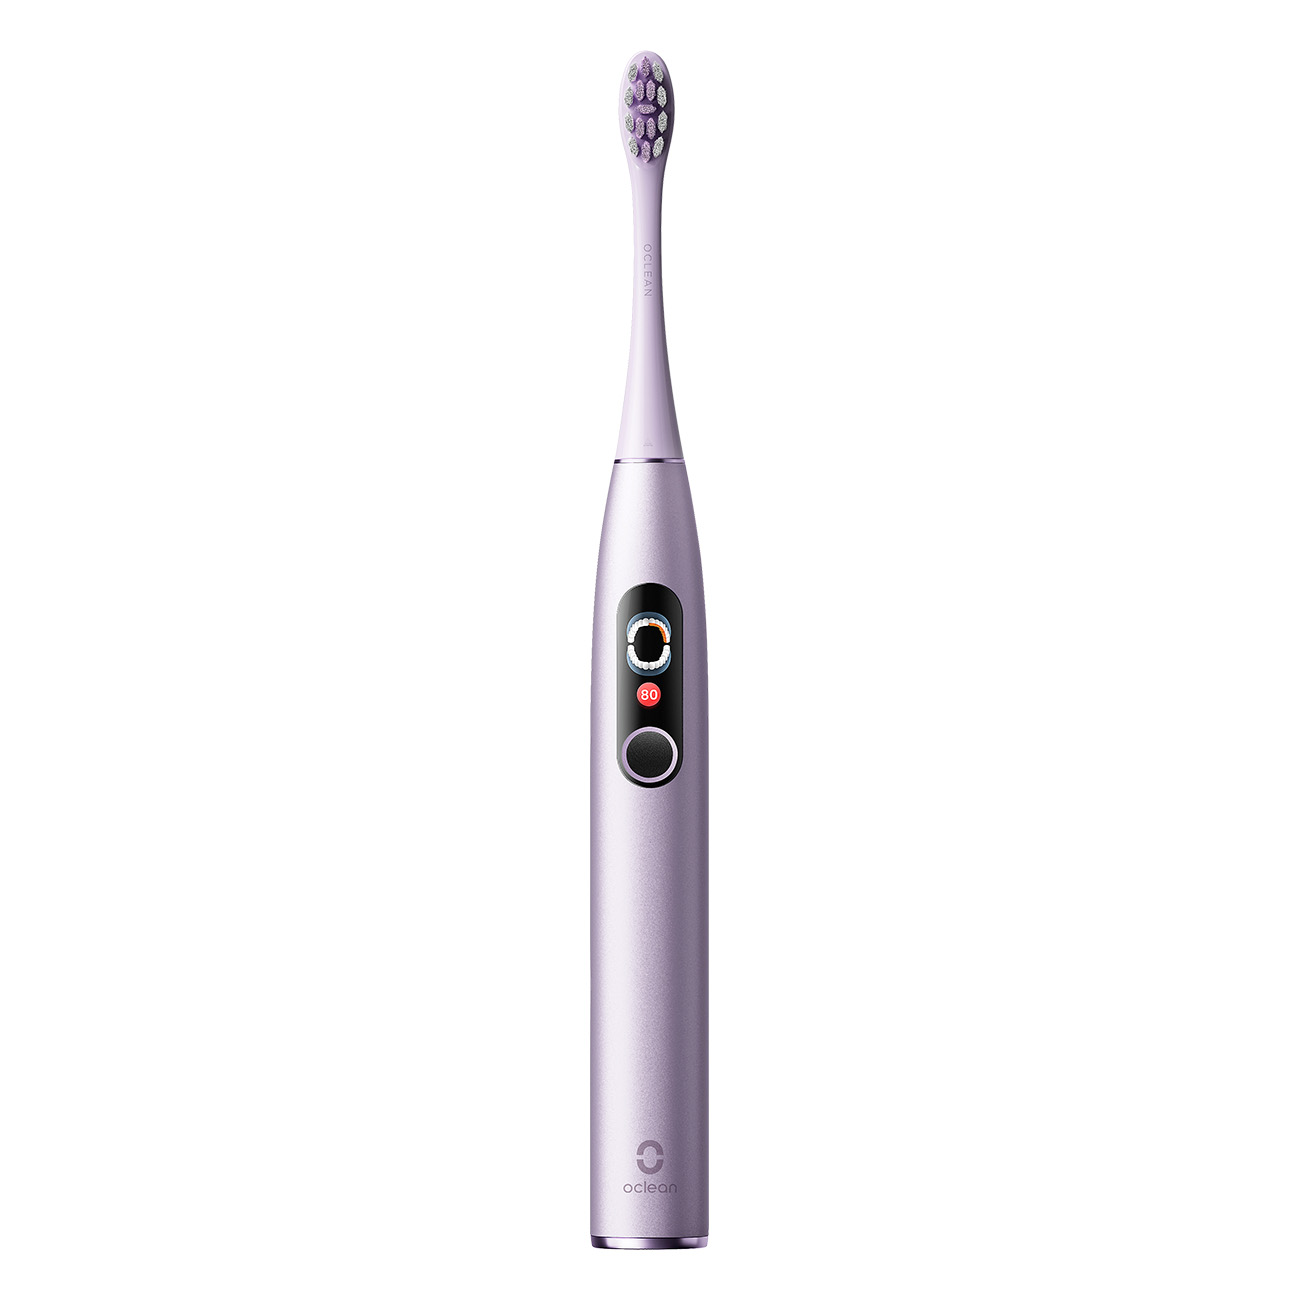 Oclean Electric Toothbrush X Pro Digital | Elektrische Zahnb?rste | Ladeanzeige | Betriebskontrollleuchte | Zeitschaltuhr | Andruckkontrolle von Oclean